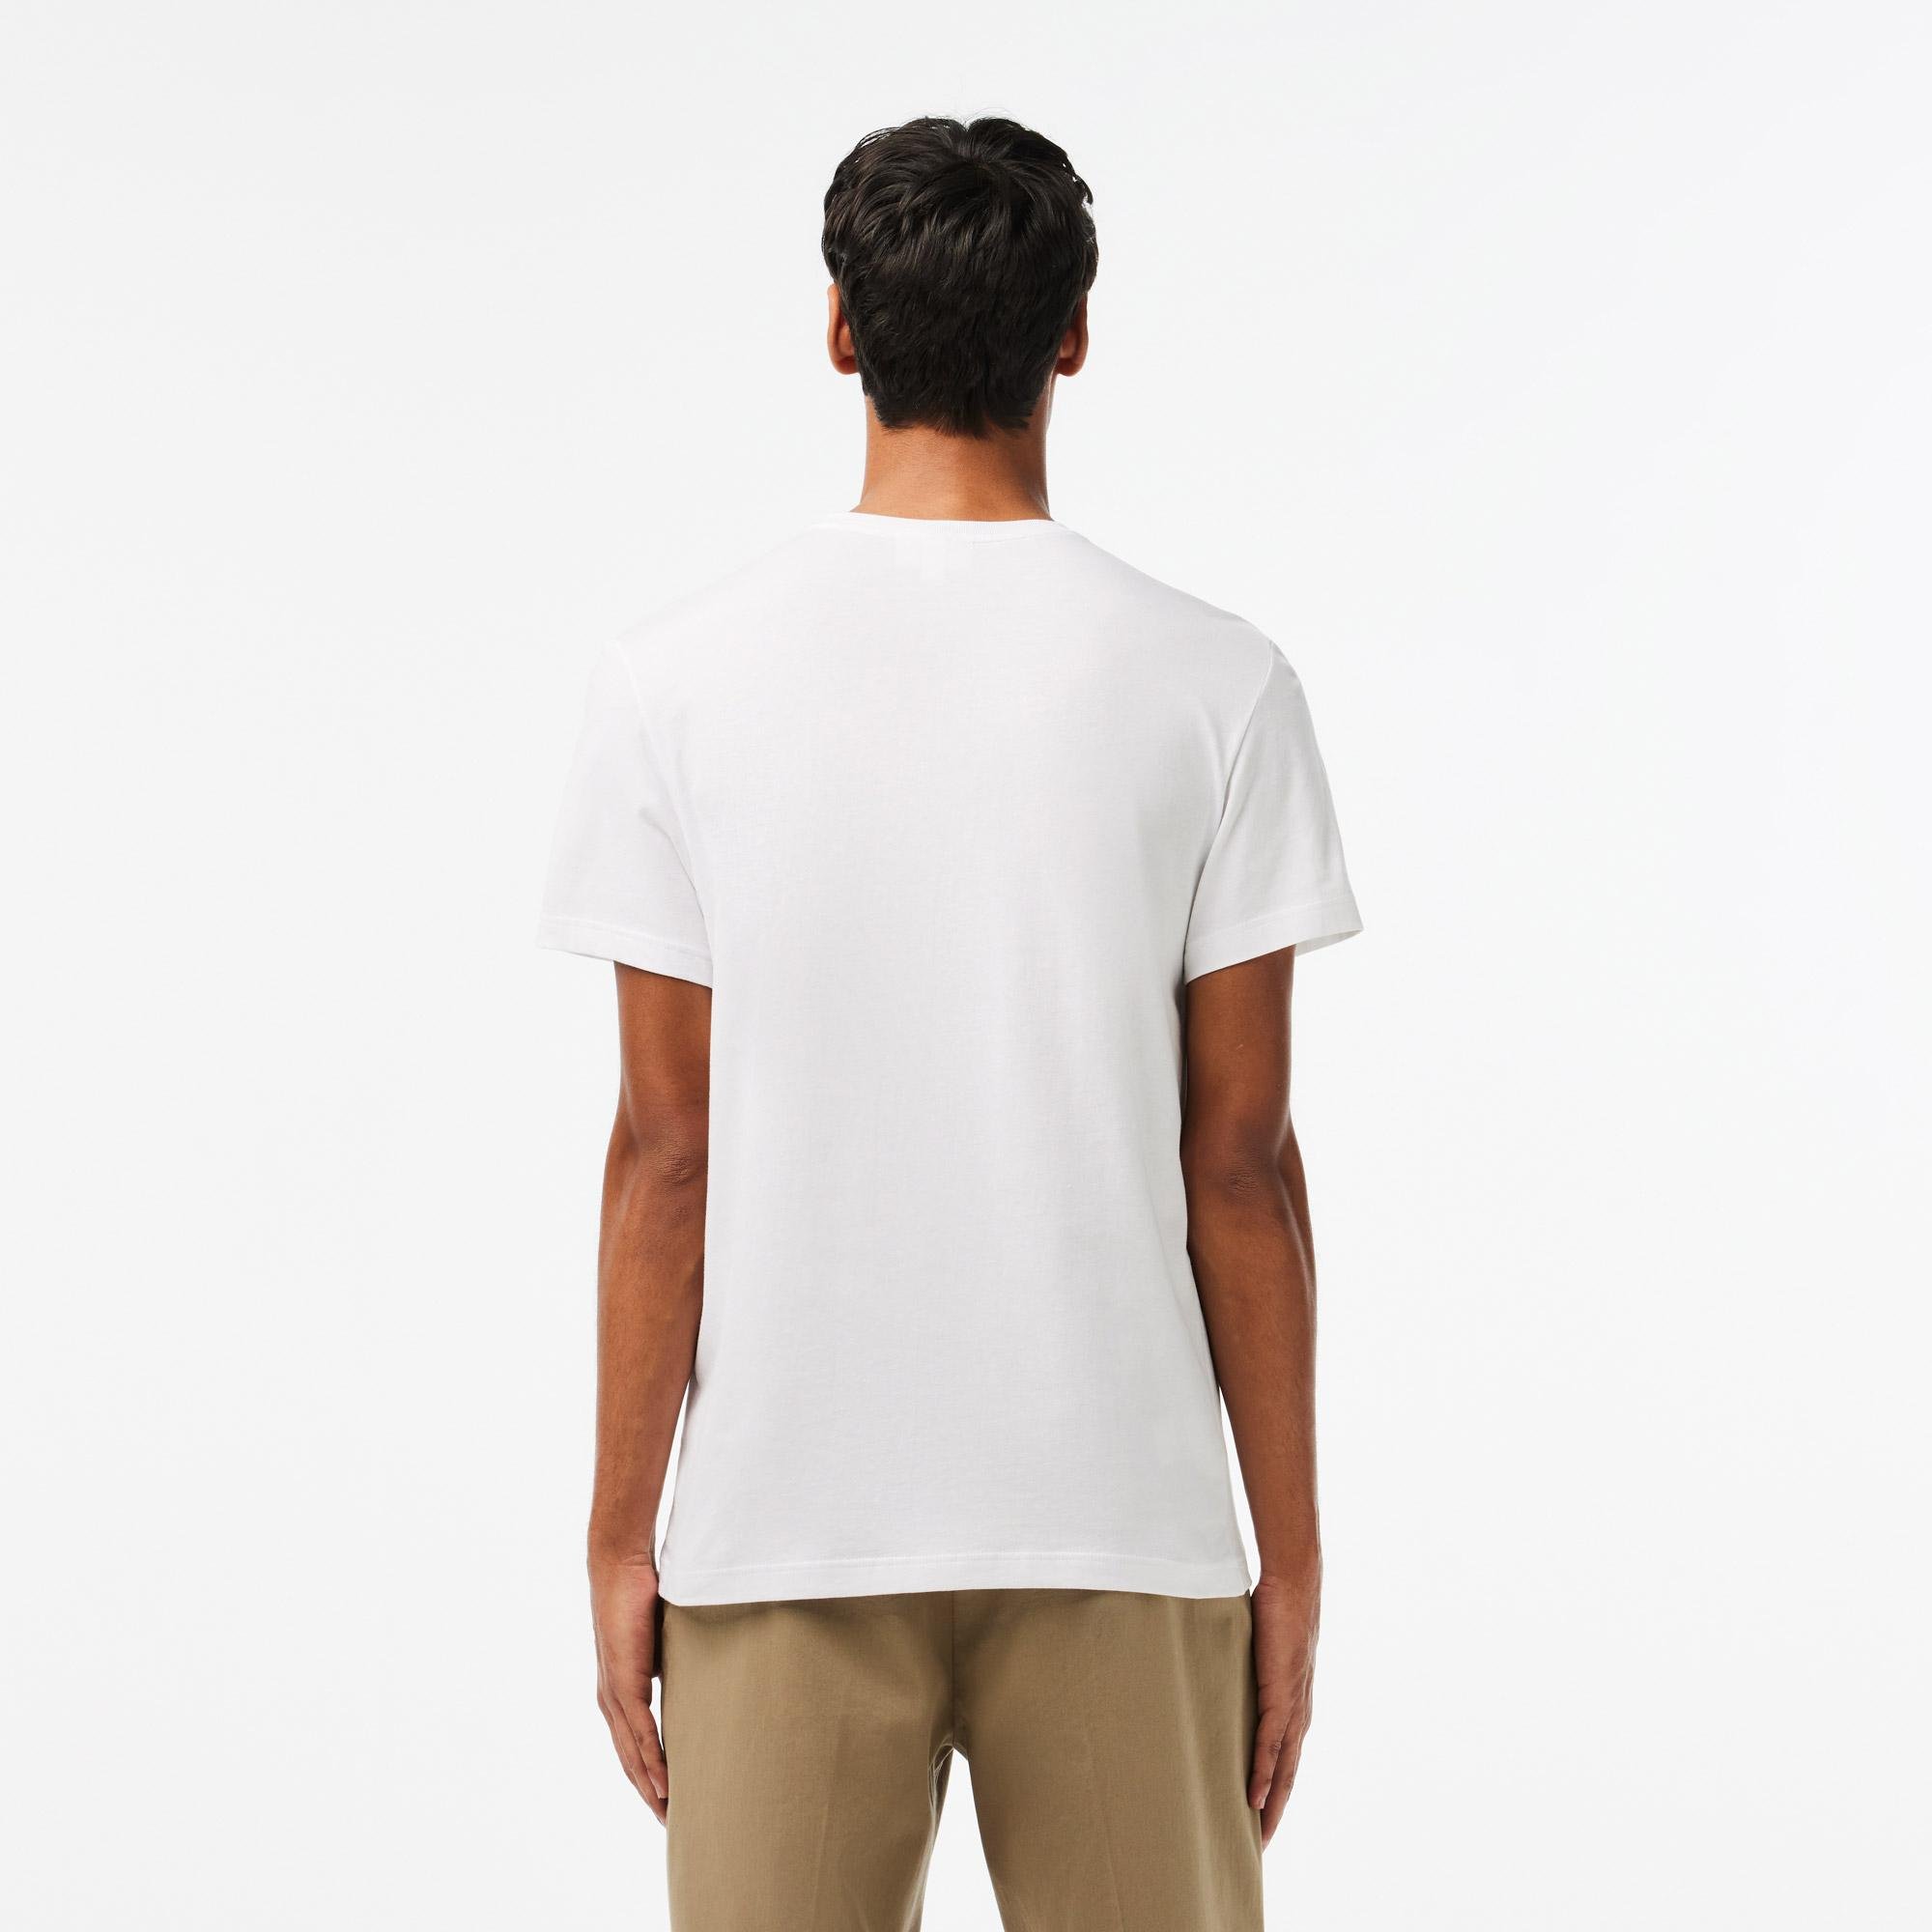 Lacoste Men’s Crew Neck Cotton T-shirt